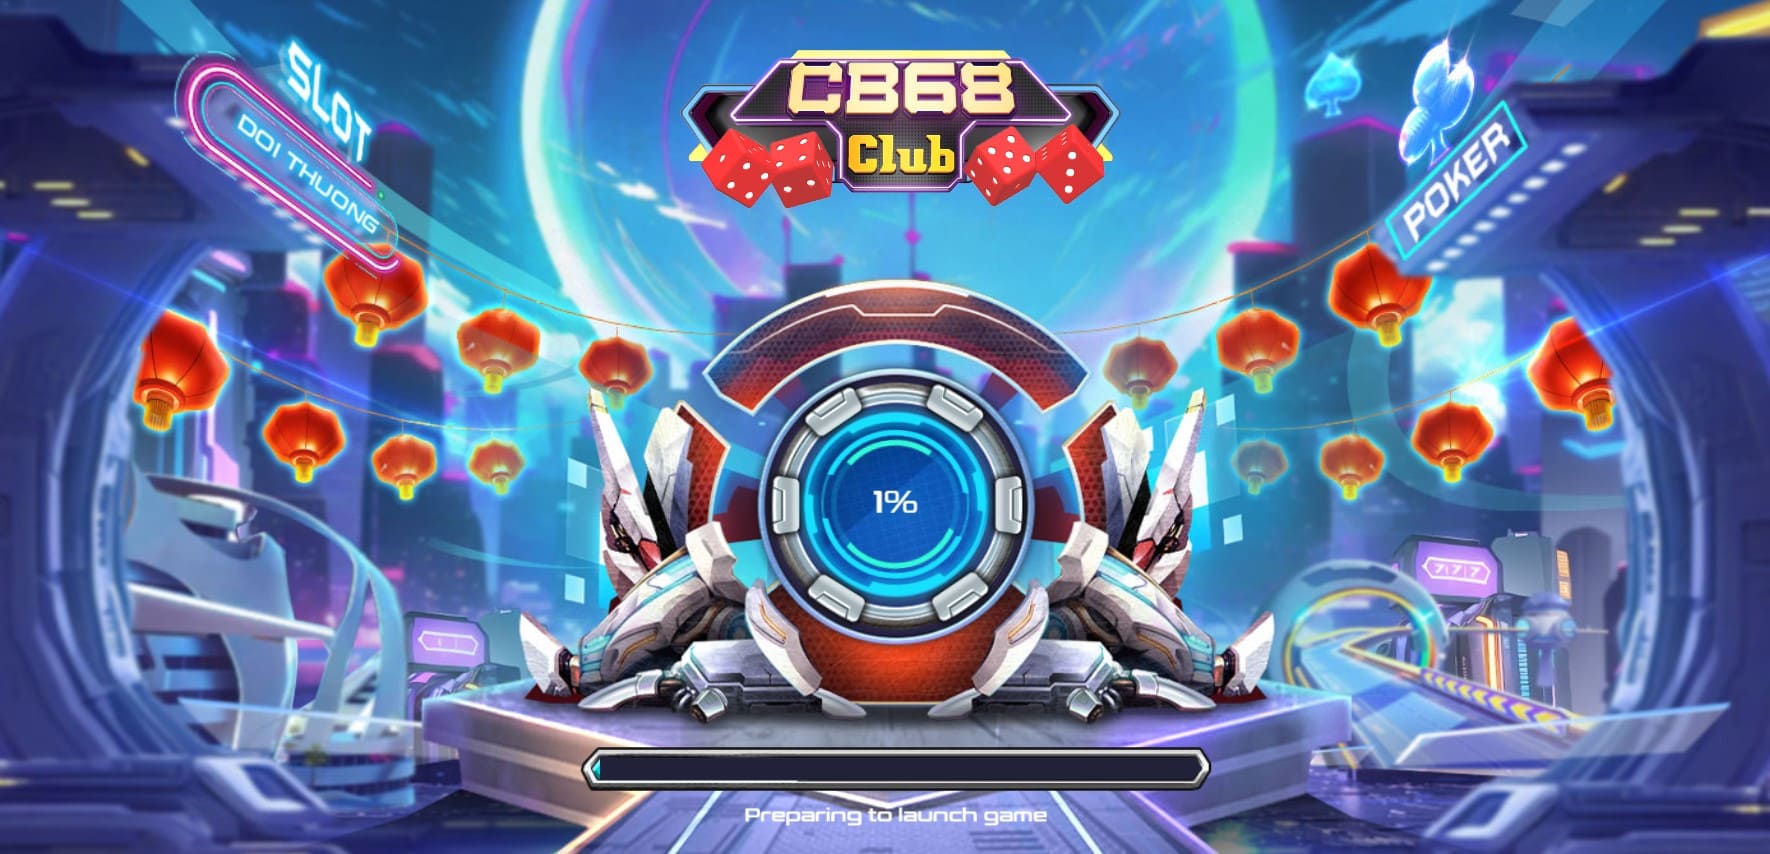 CB68 club game bài công nghệ | Tải CB68.club IOS Android